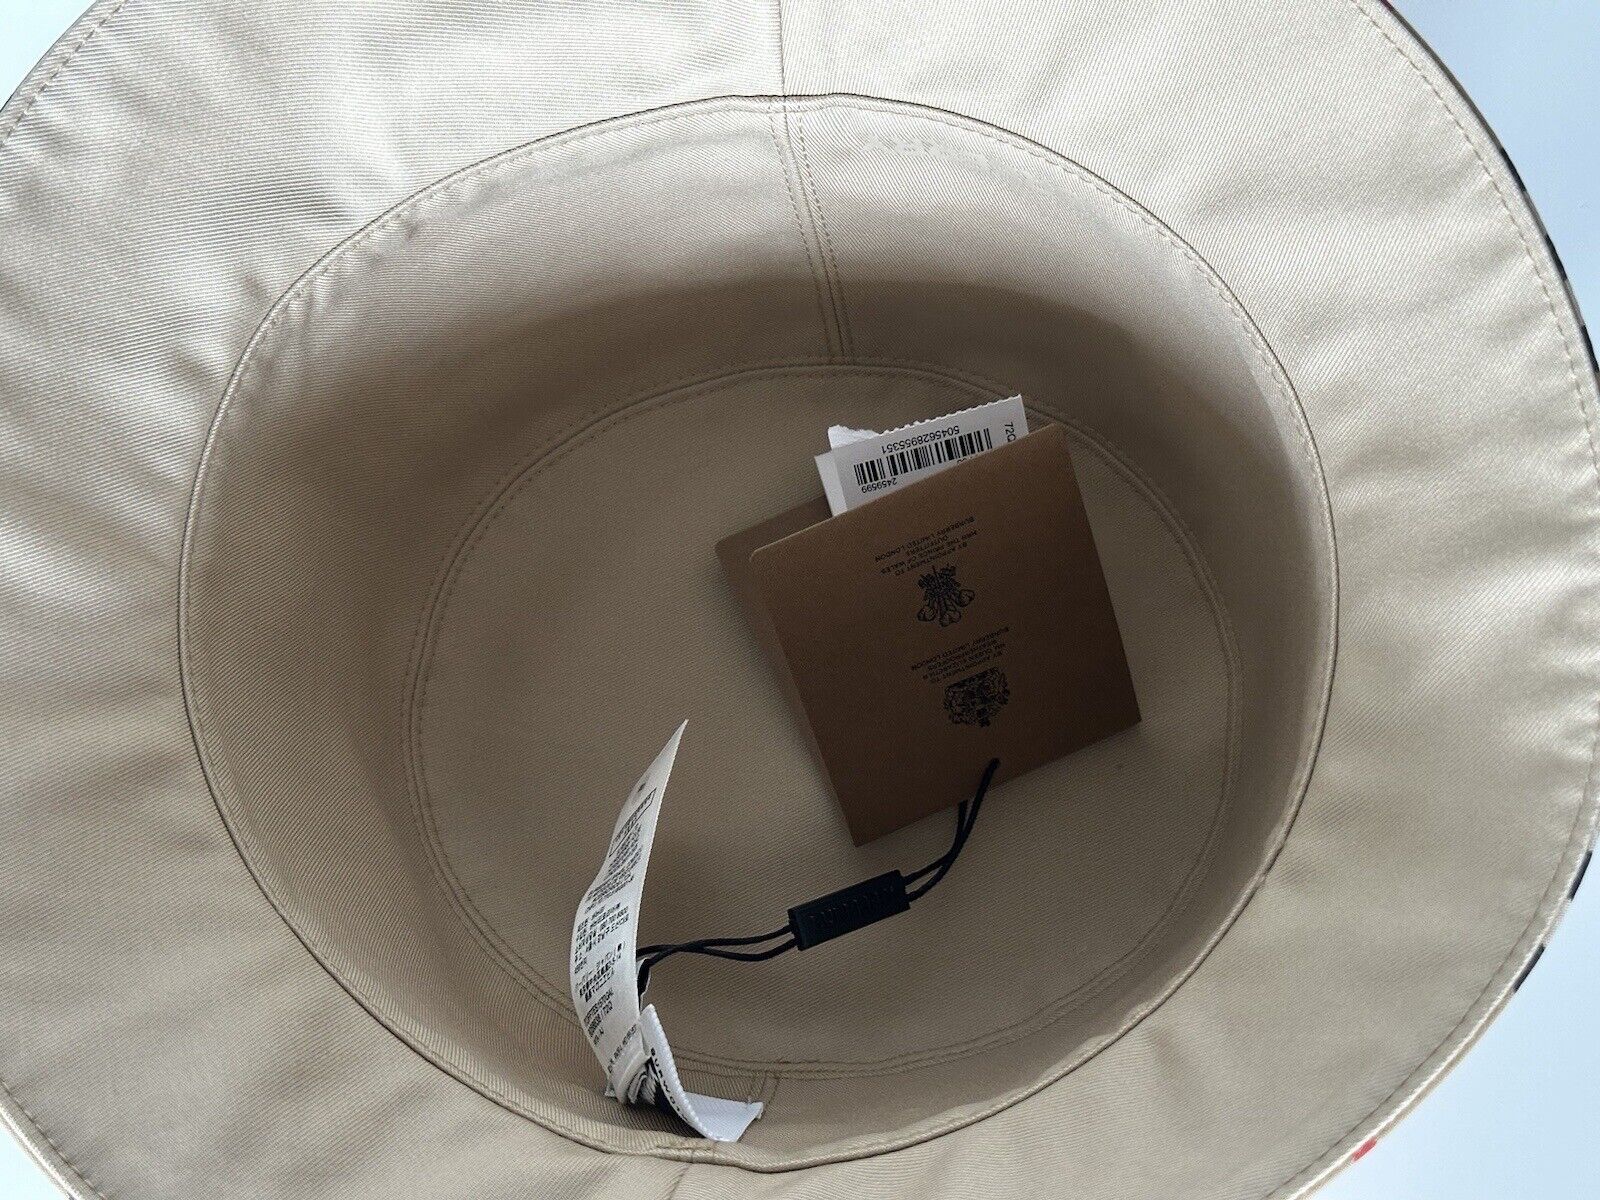 Neu mit Etikett: 470 $ Burberry Check Bucket Hat Cotton Archive Beige L (59 cm) 8056638 Italien 